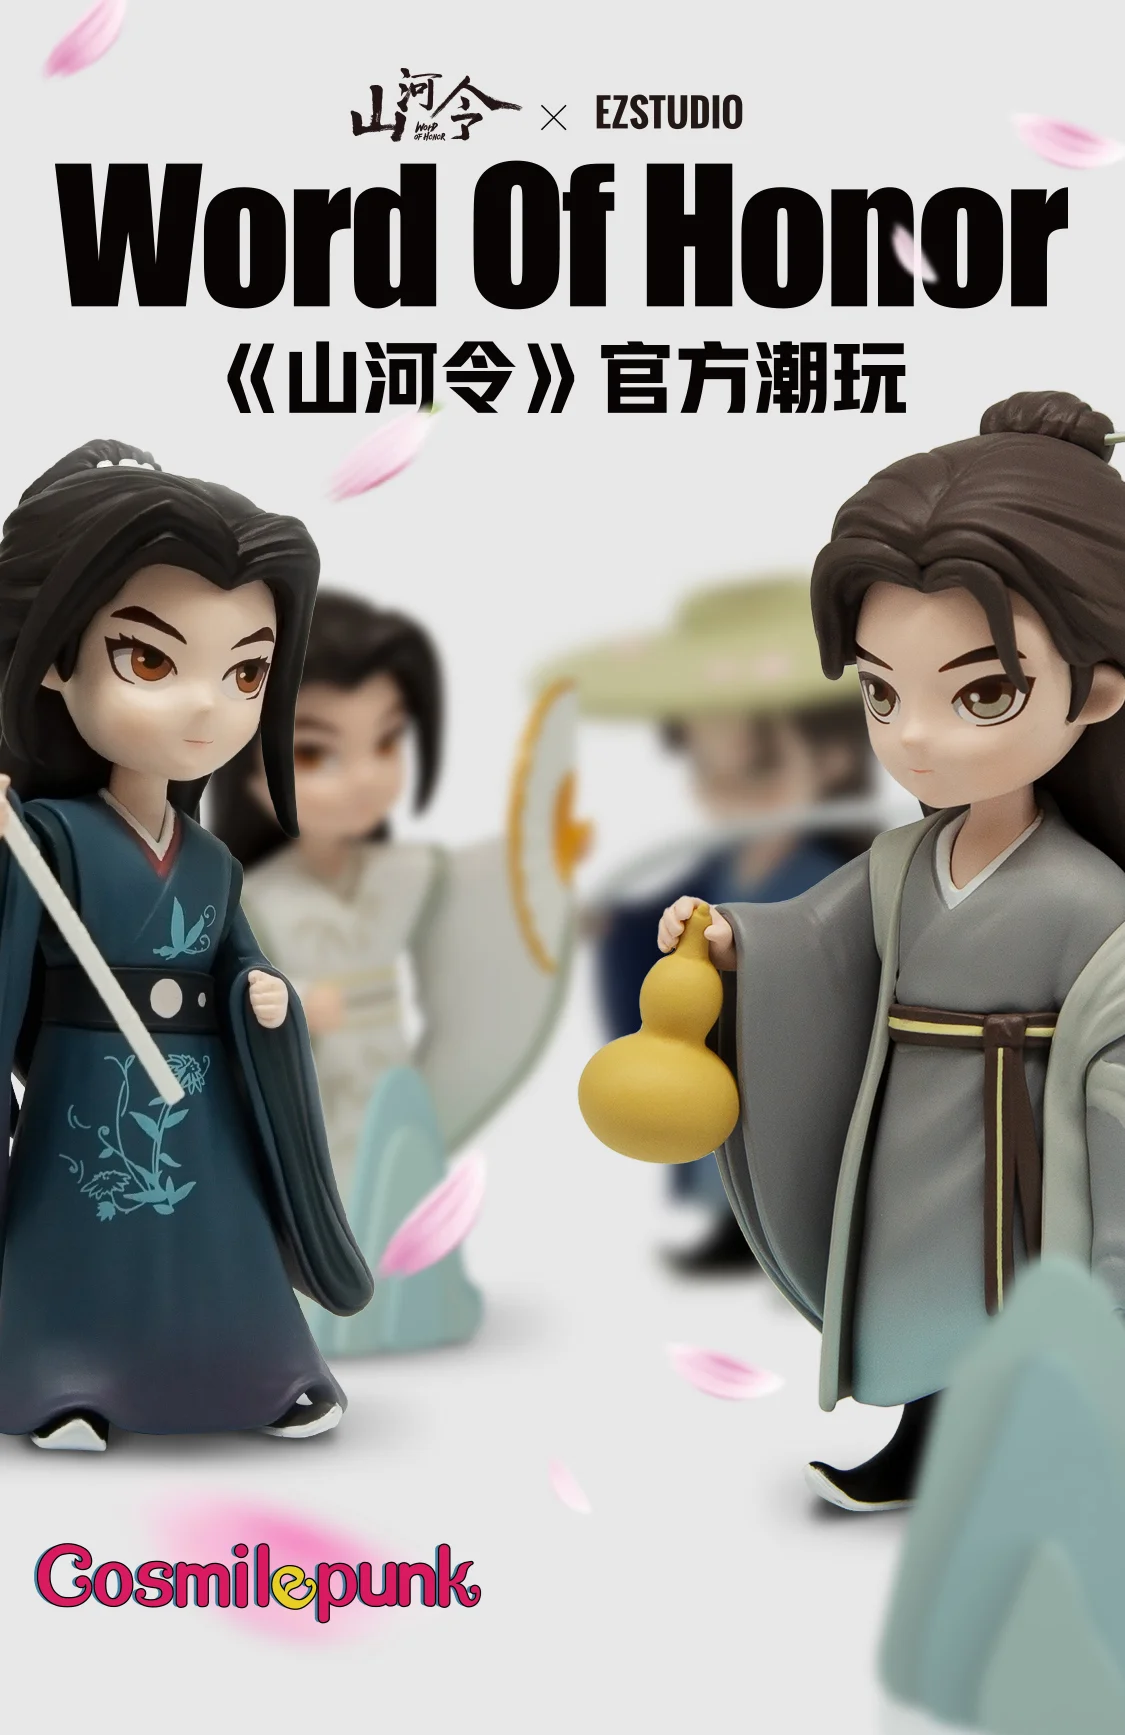 

TV WORD OF HONOR Shan He Ling Wen Kexing Zhou Zishu Figure Doll Model Toy Cosplay Props Cute